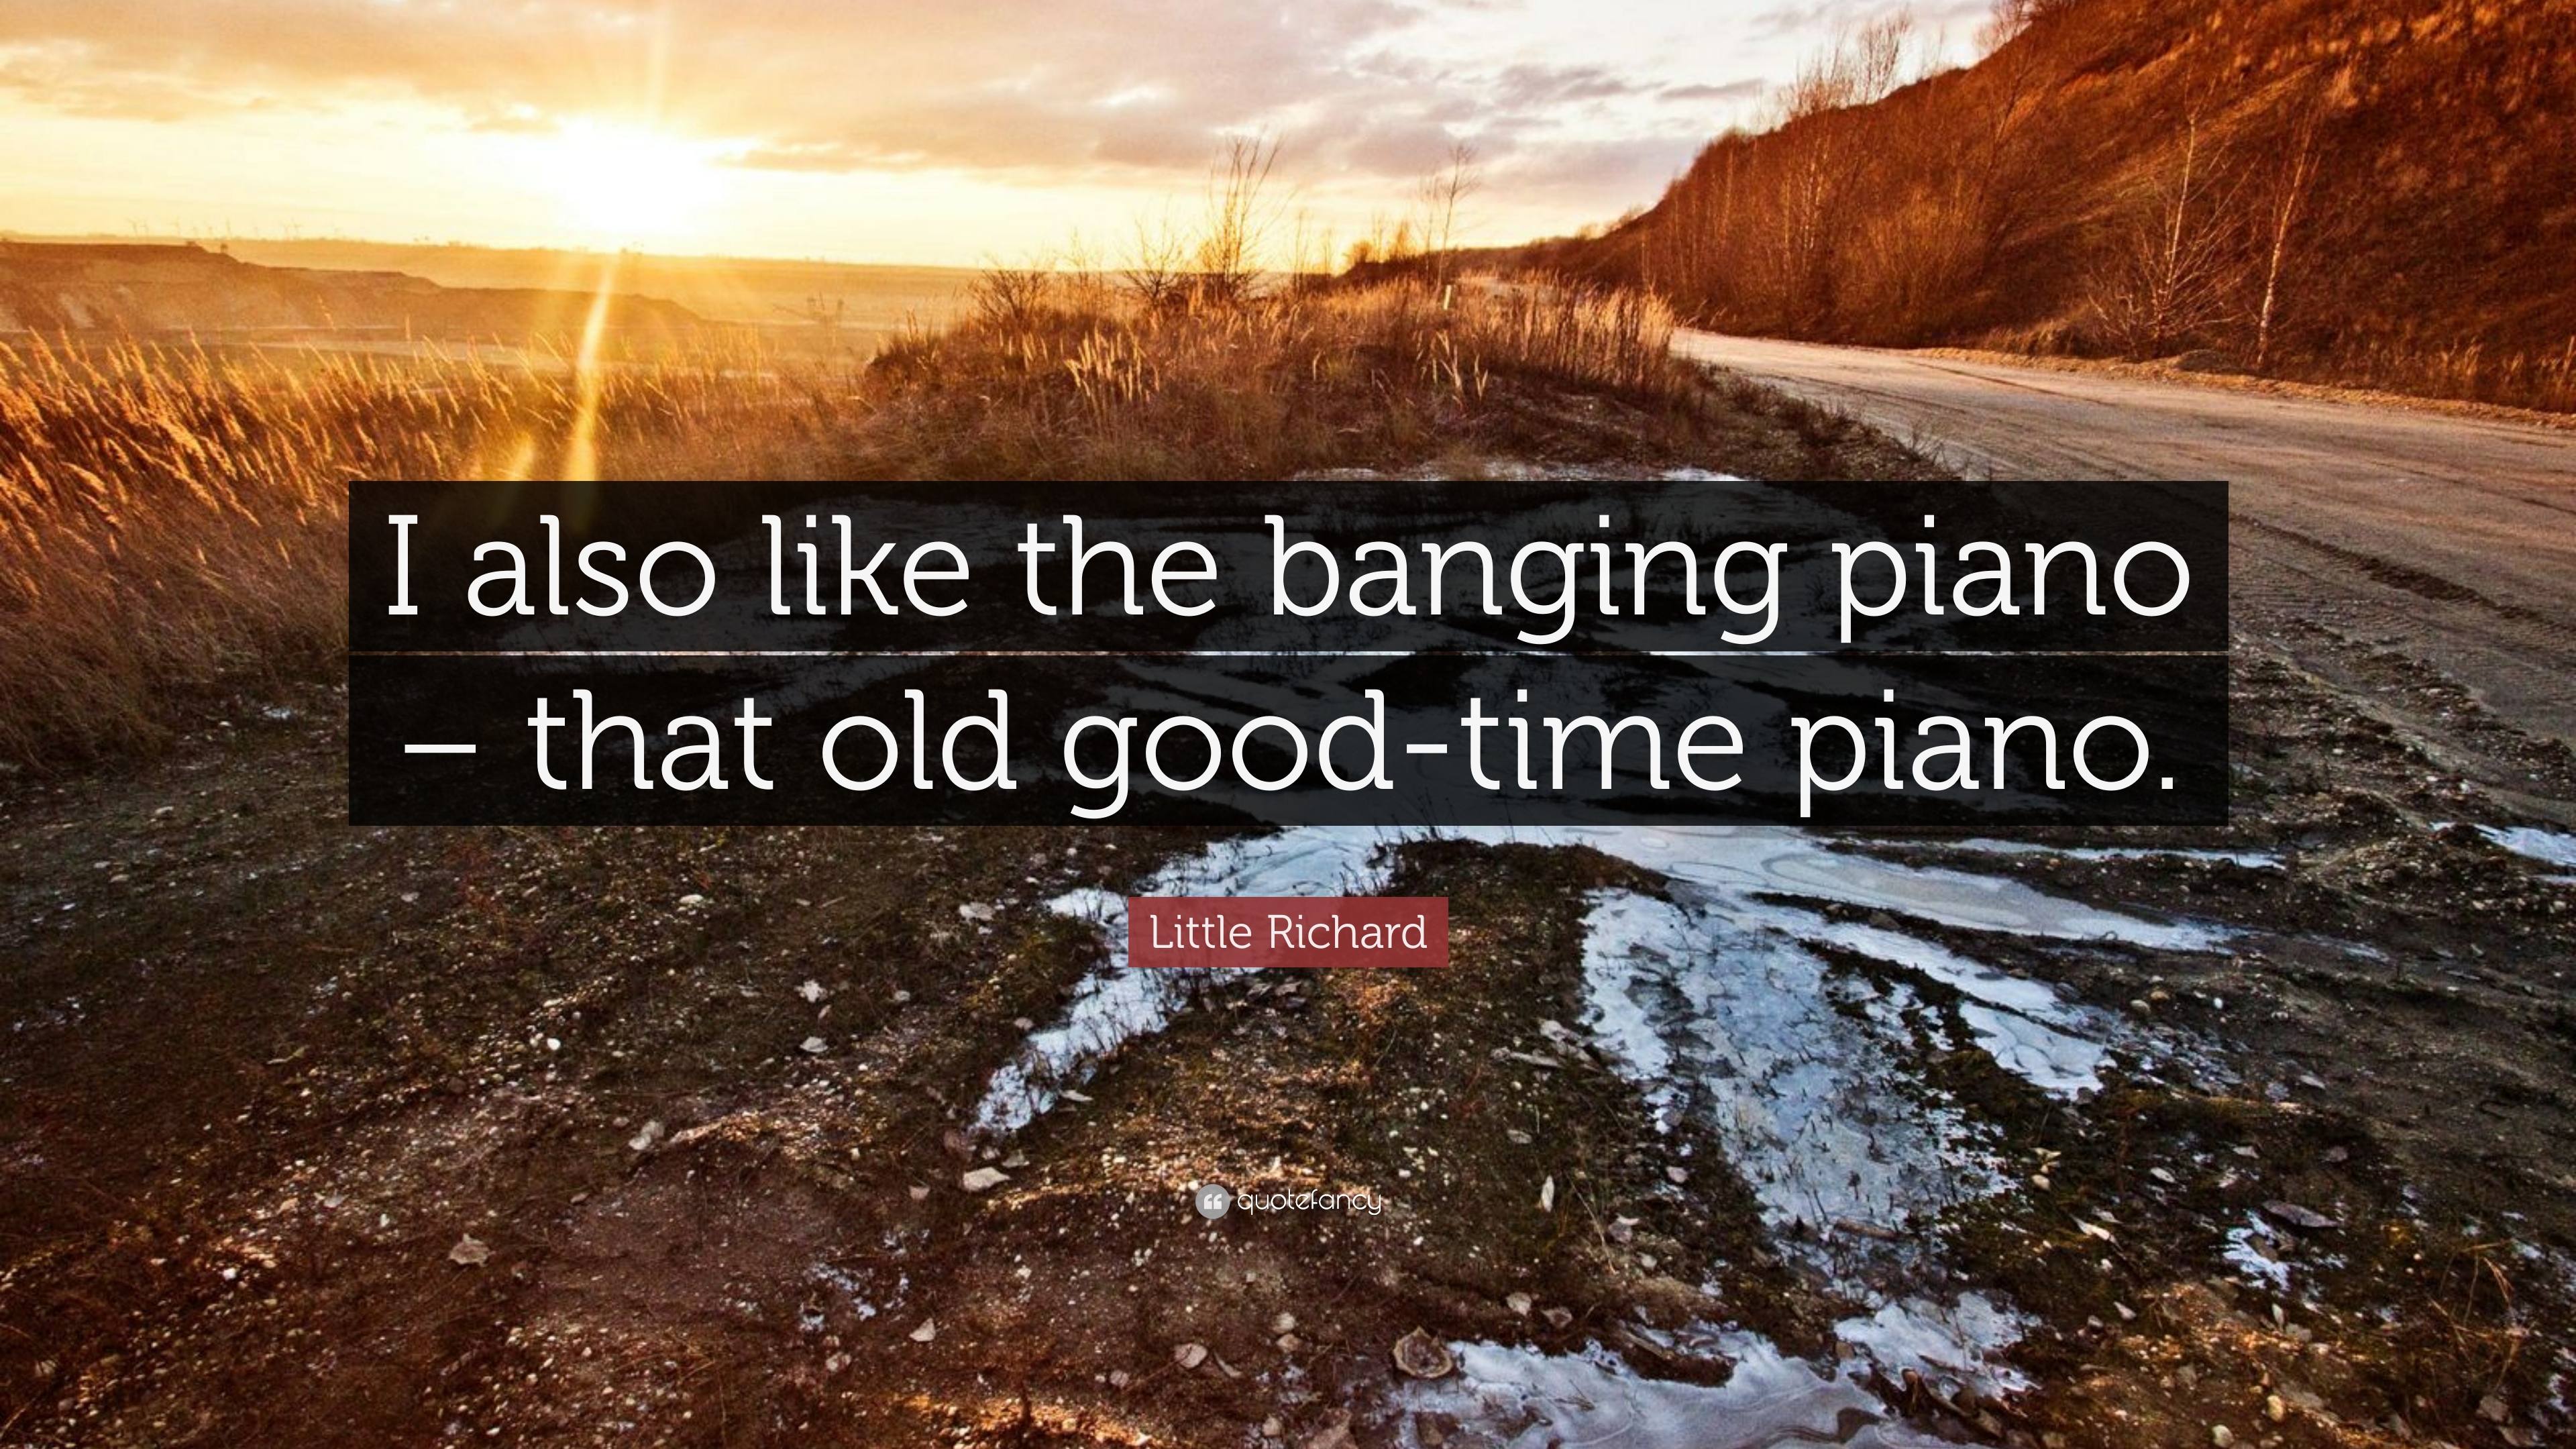 10 Best Little Richard Quotes